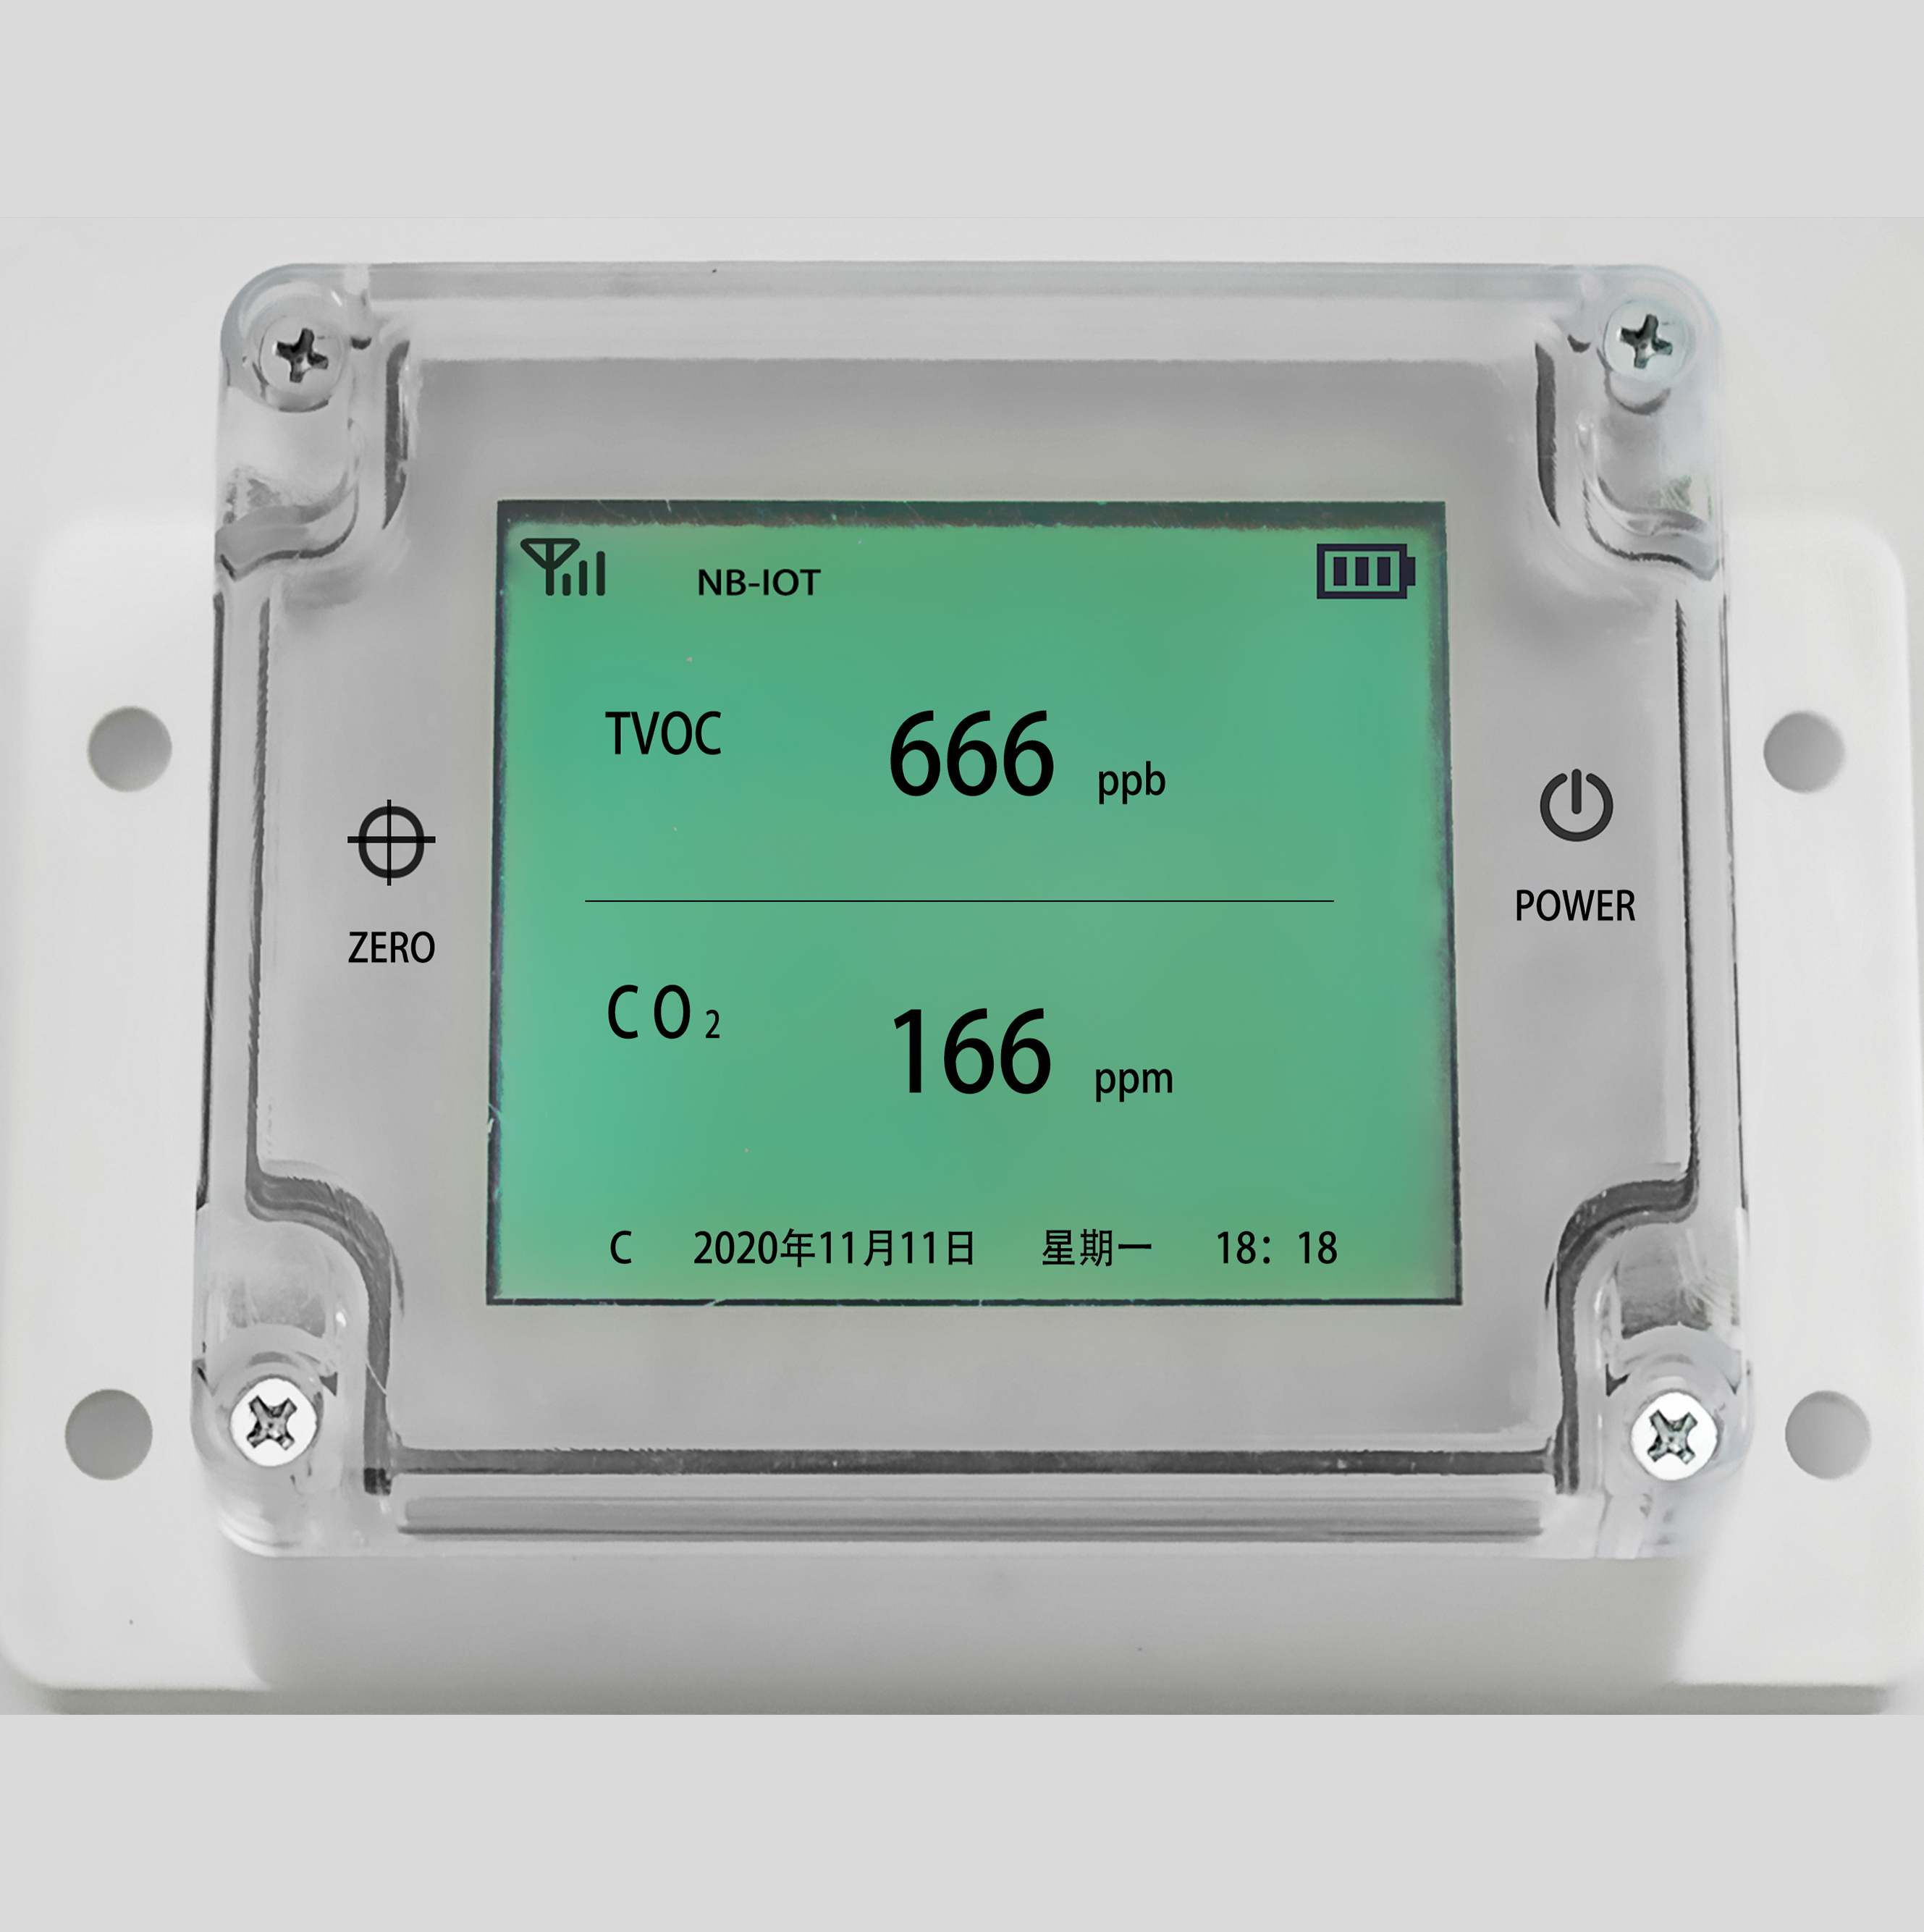 无线智能TVOC&CO2传感器图片